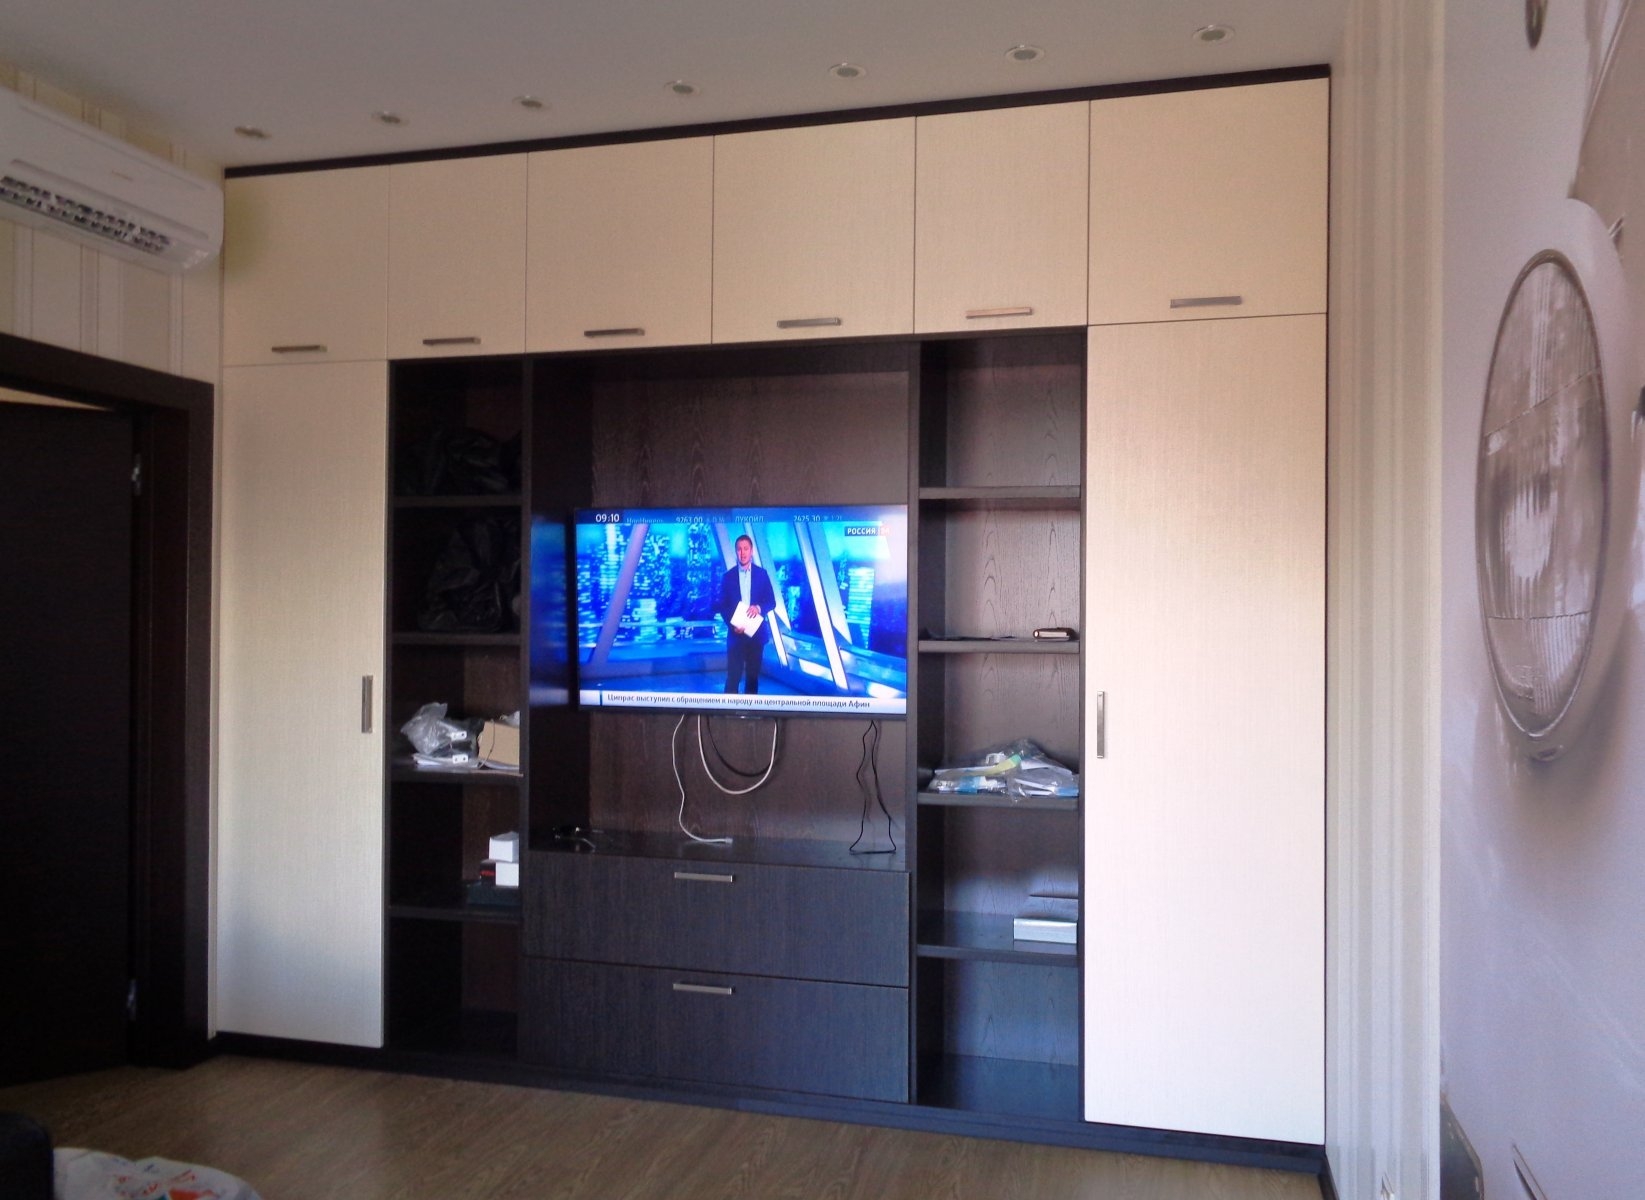 Телевизор встроен в шкаф. Телевизор встроенный в шкаф. Шкаф стенка. Встроенная мебель для гостиной. Стенка со встроенными шкафами.